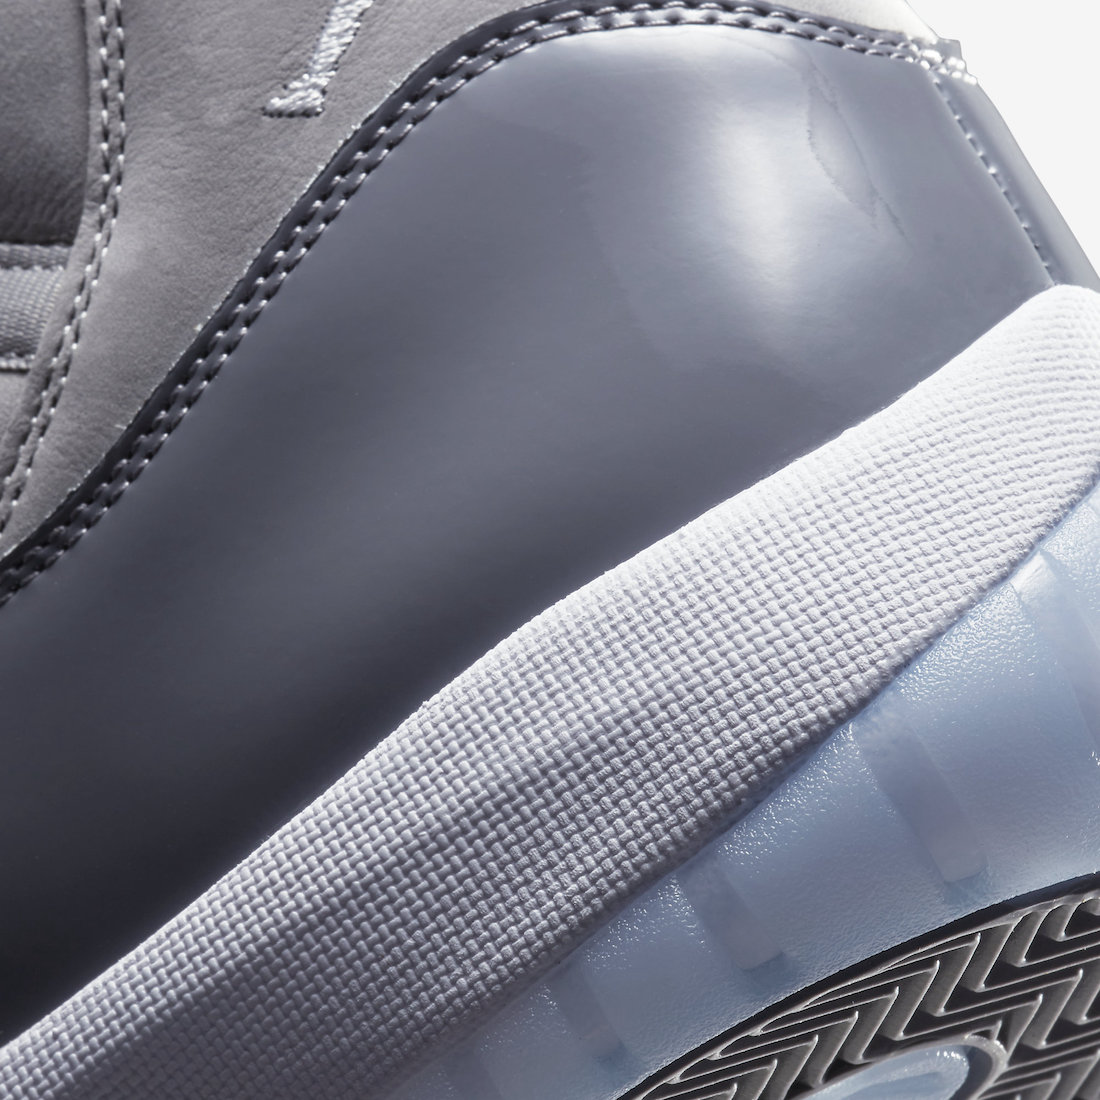 Air Jordan 11 Cool Grey 2021 CT8012-005 Release Date